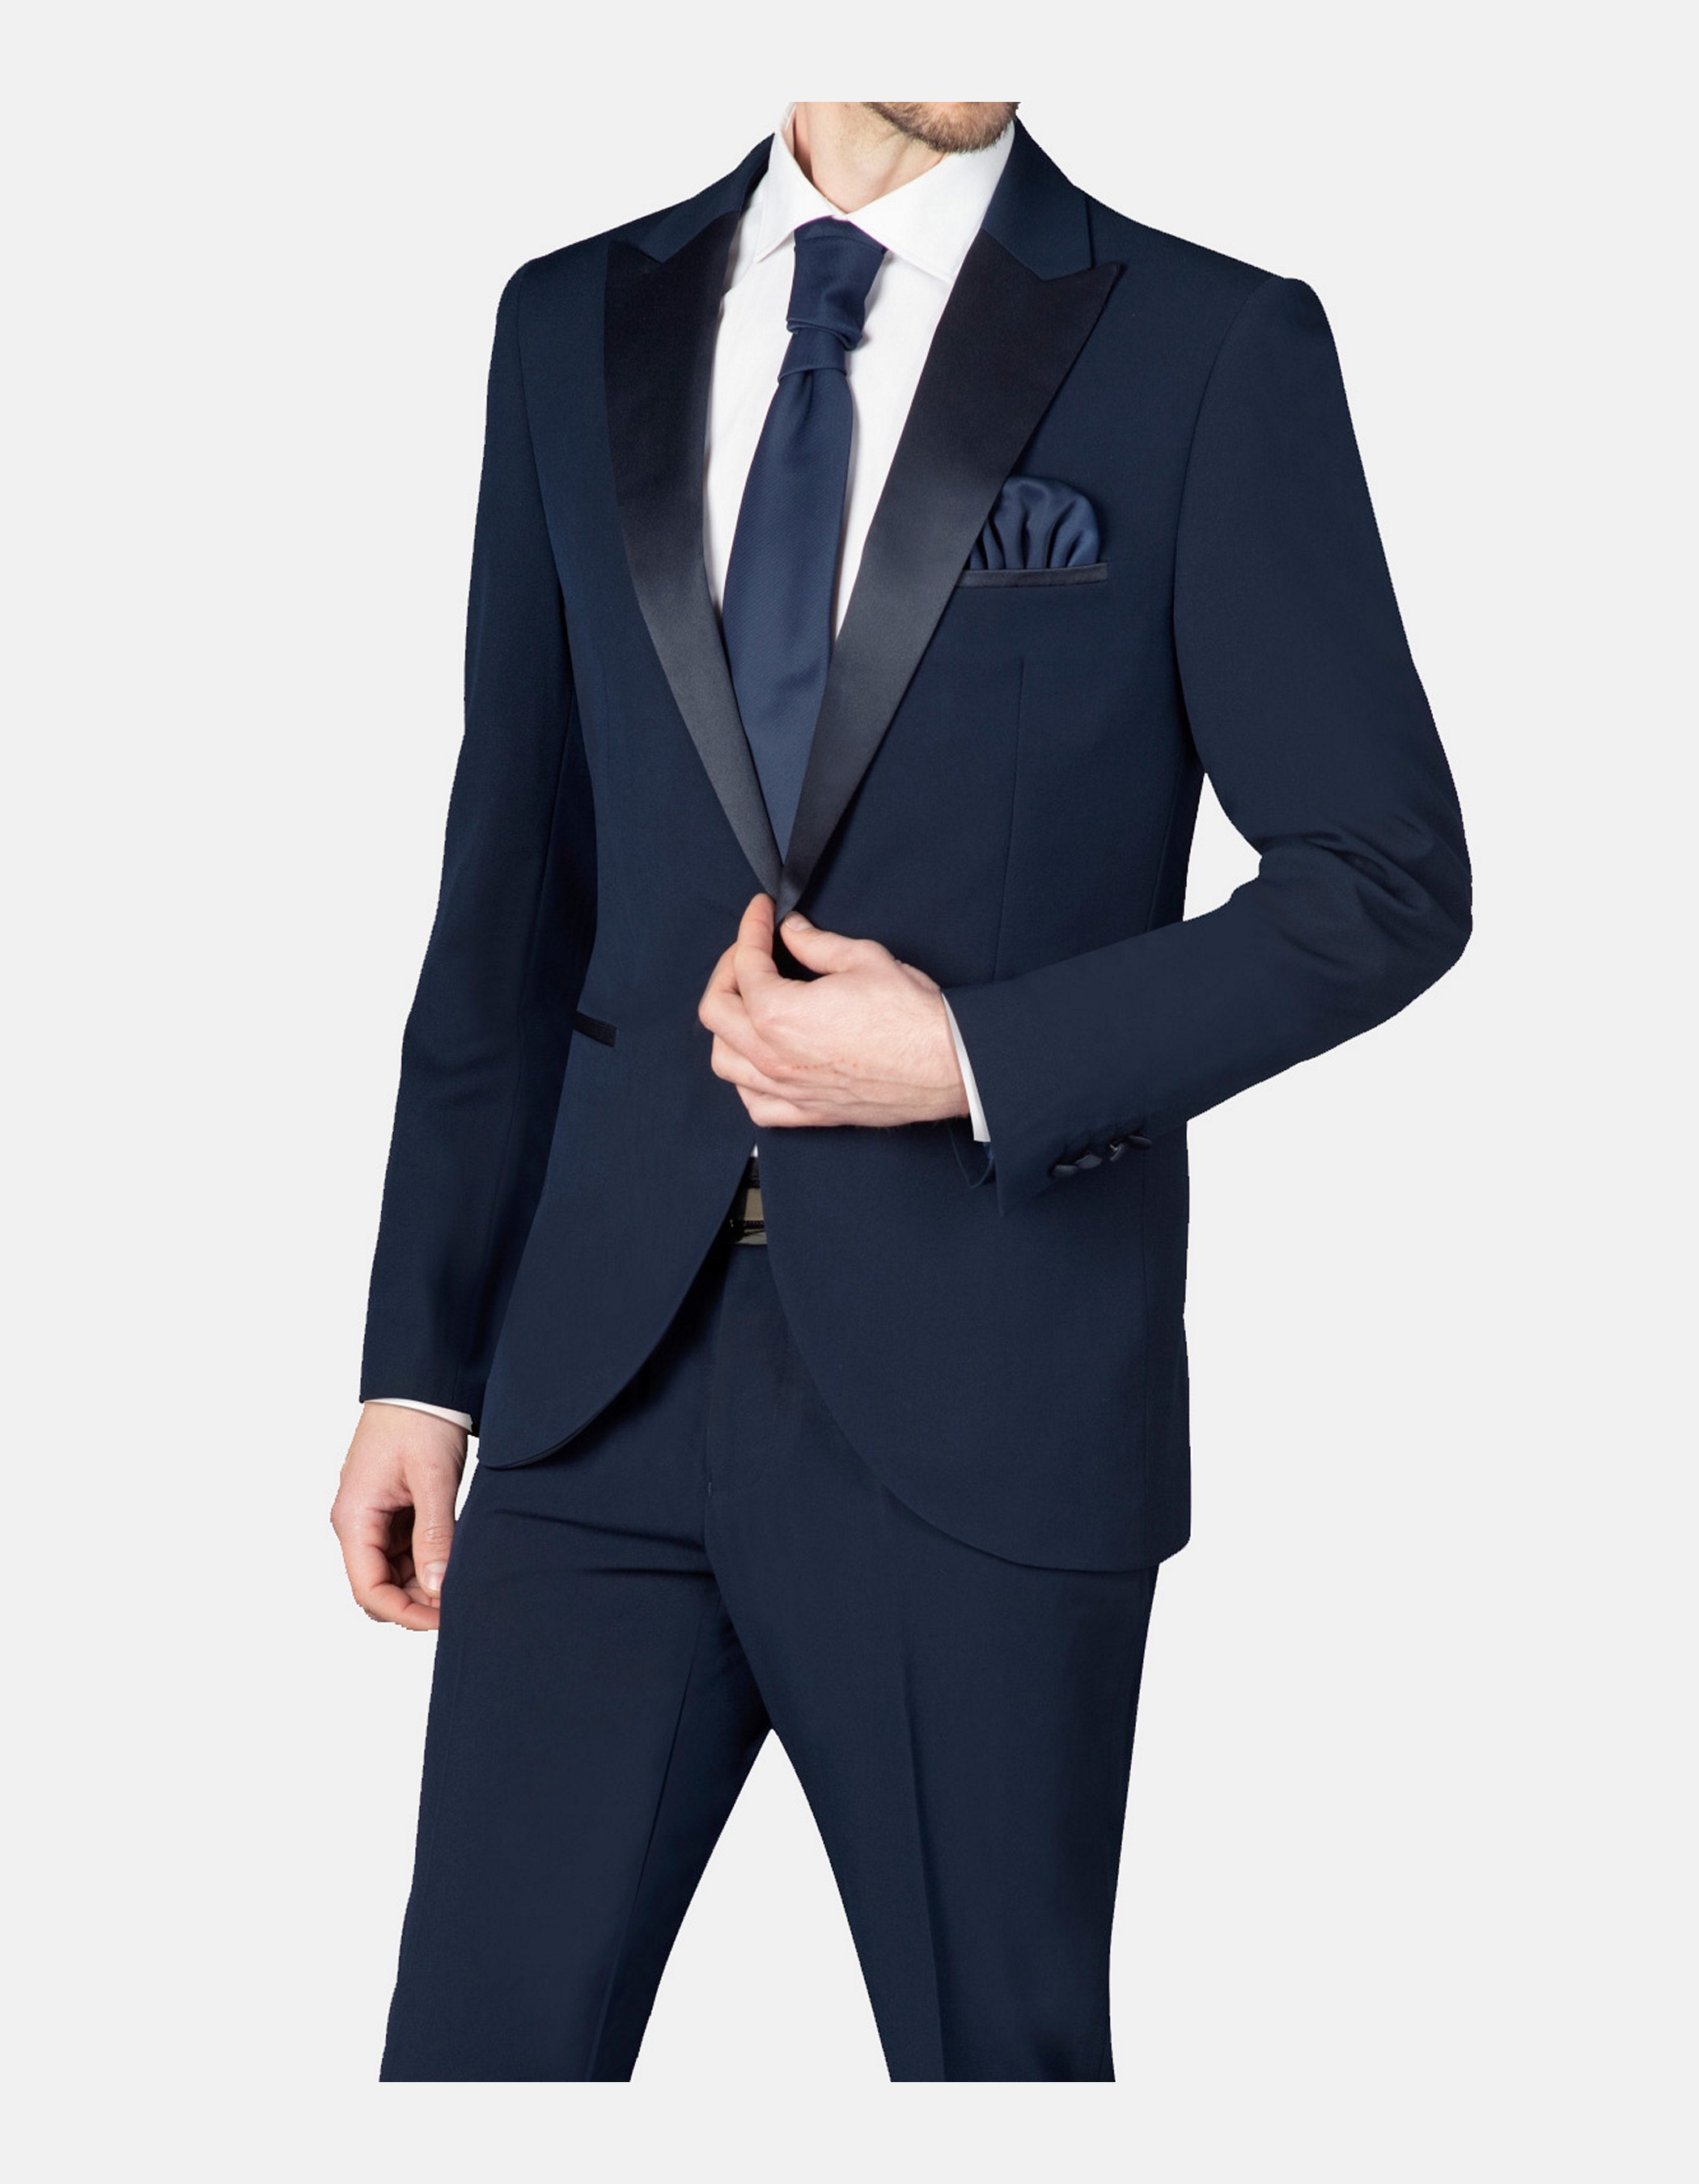 Peak lapel tuxedo suit